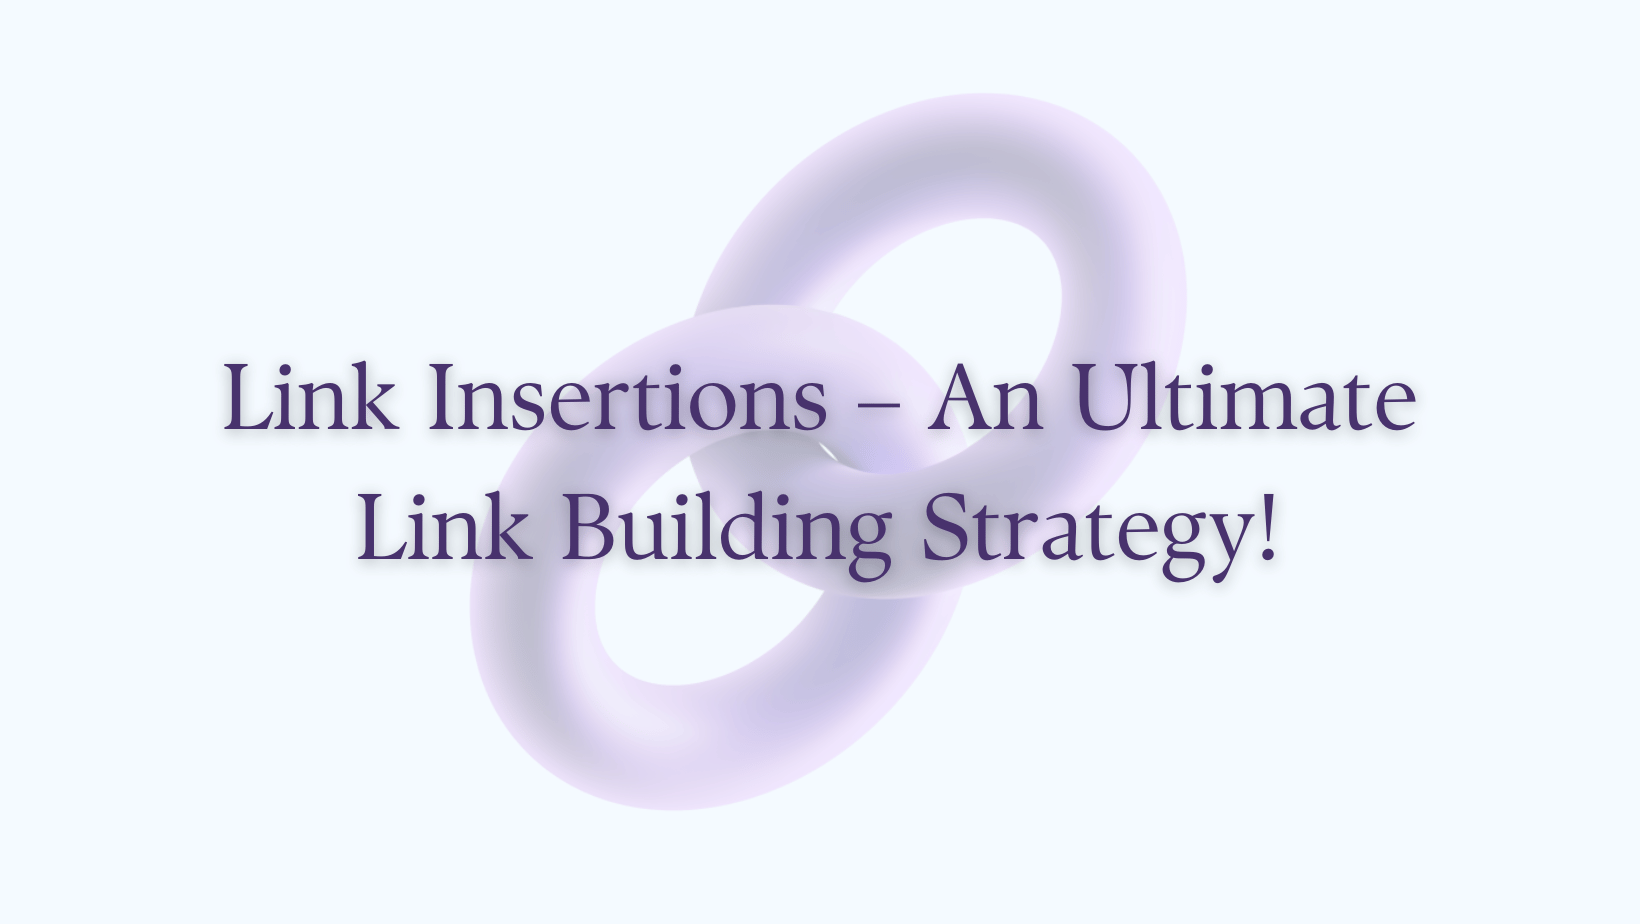 Wstawianie linków – najlepsza strategia budowania linków